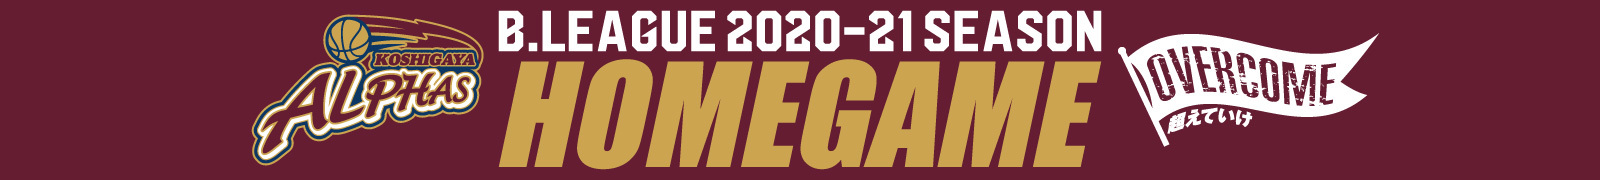 【2021年新年最初のホームゲーム!!】越谷アルファーズ 2020-21シーズン ホームゲーム vs.西宮ストークス 2021年1月23日(土)・24日(日)